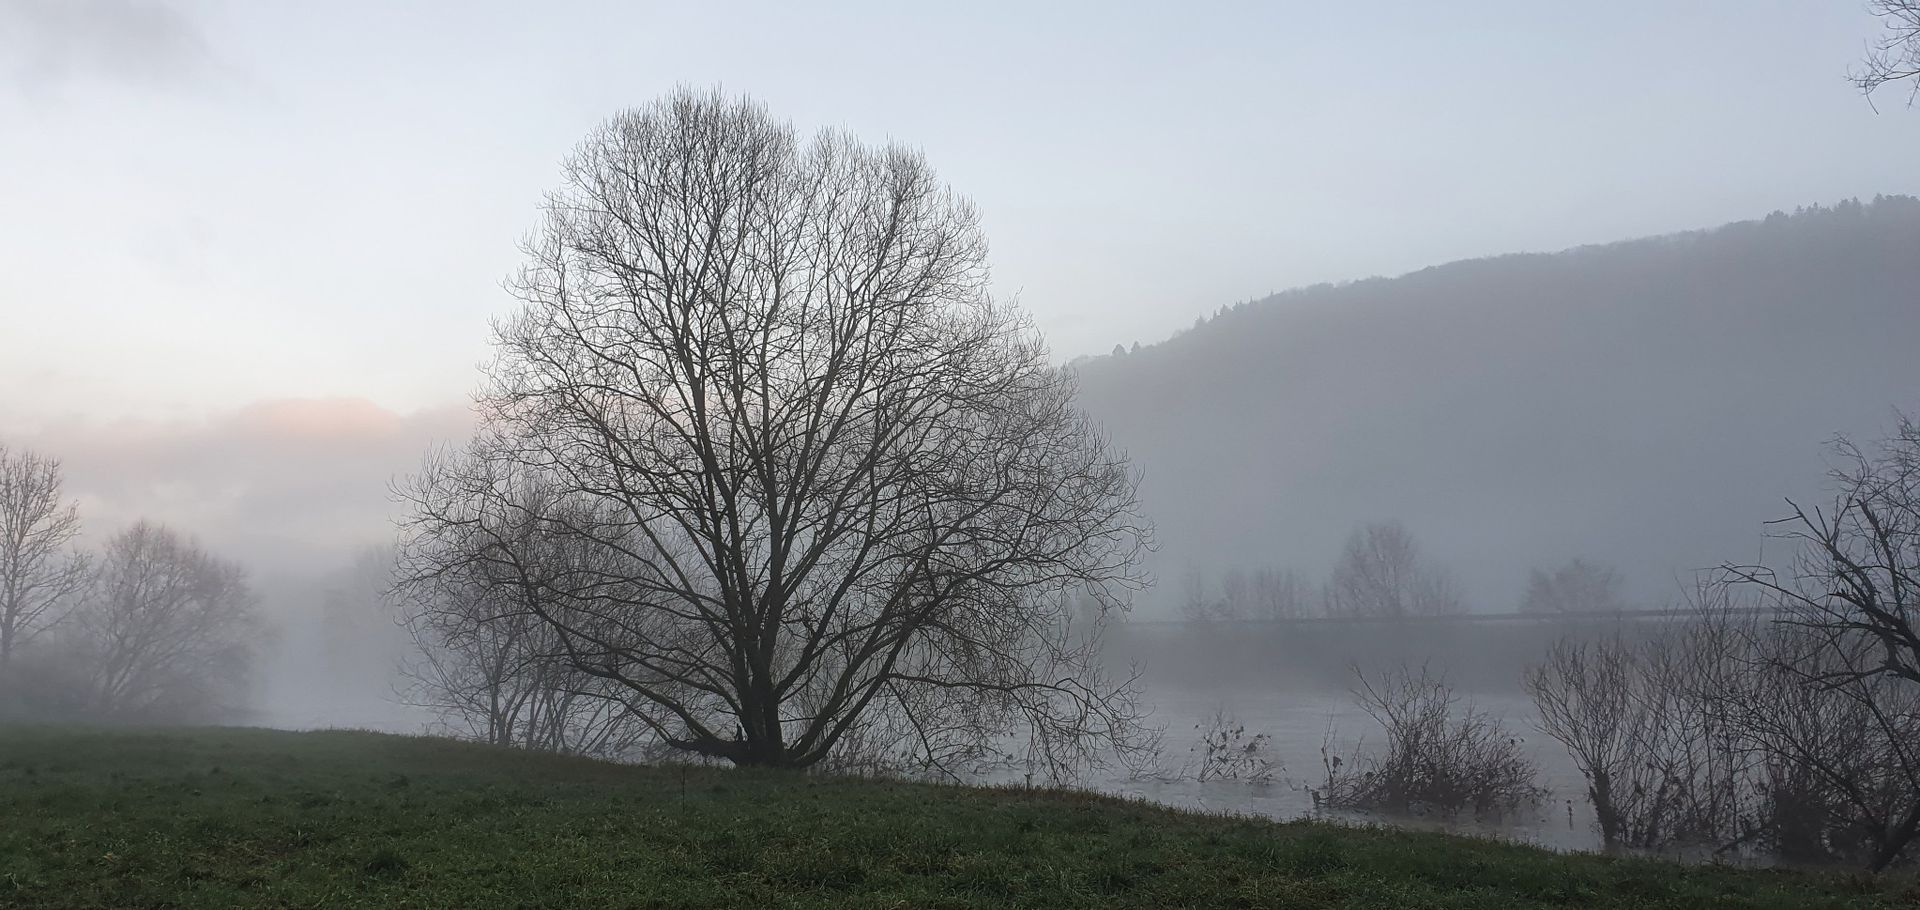 Mist over Sauer river in Echternach